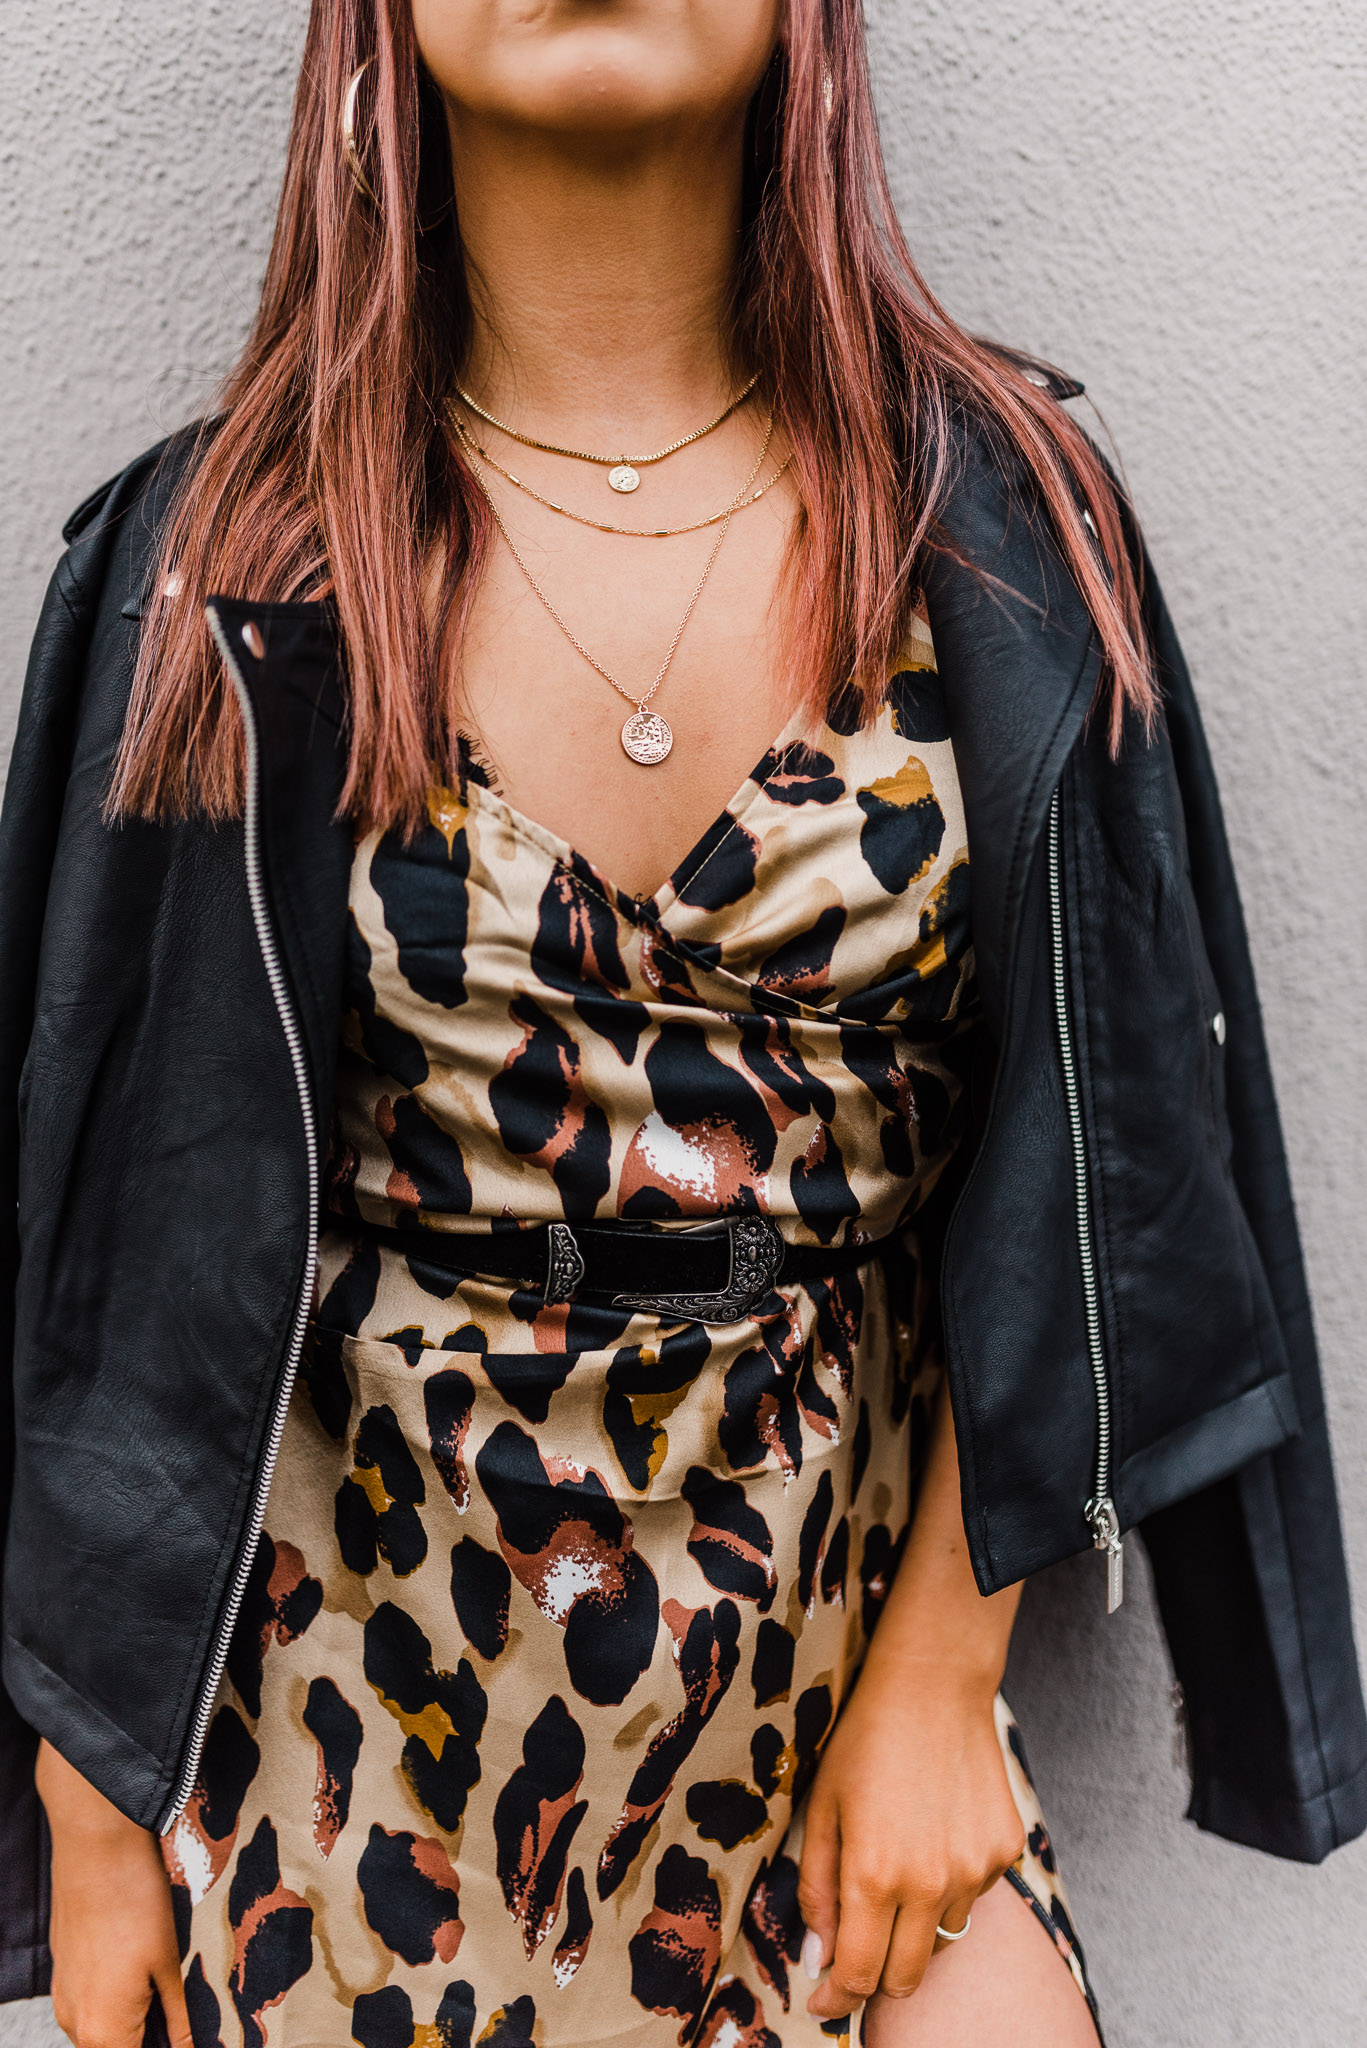 Detail shot of fashion blogger wearing cheetah print dress.